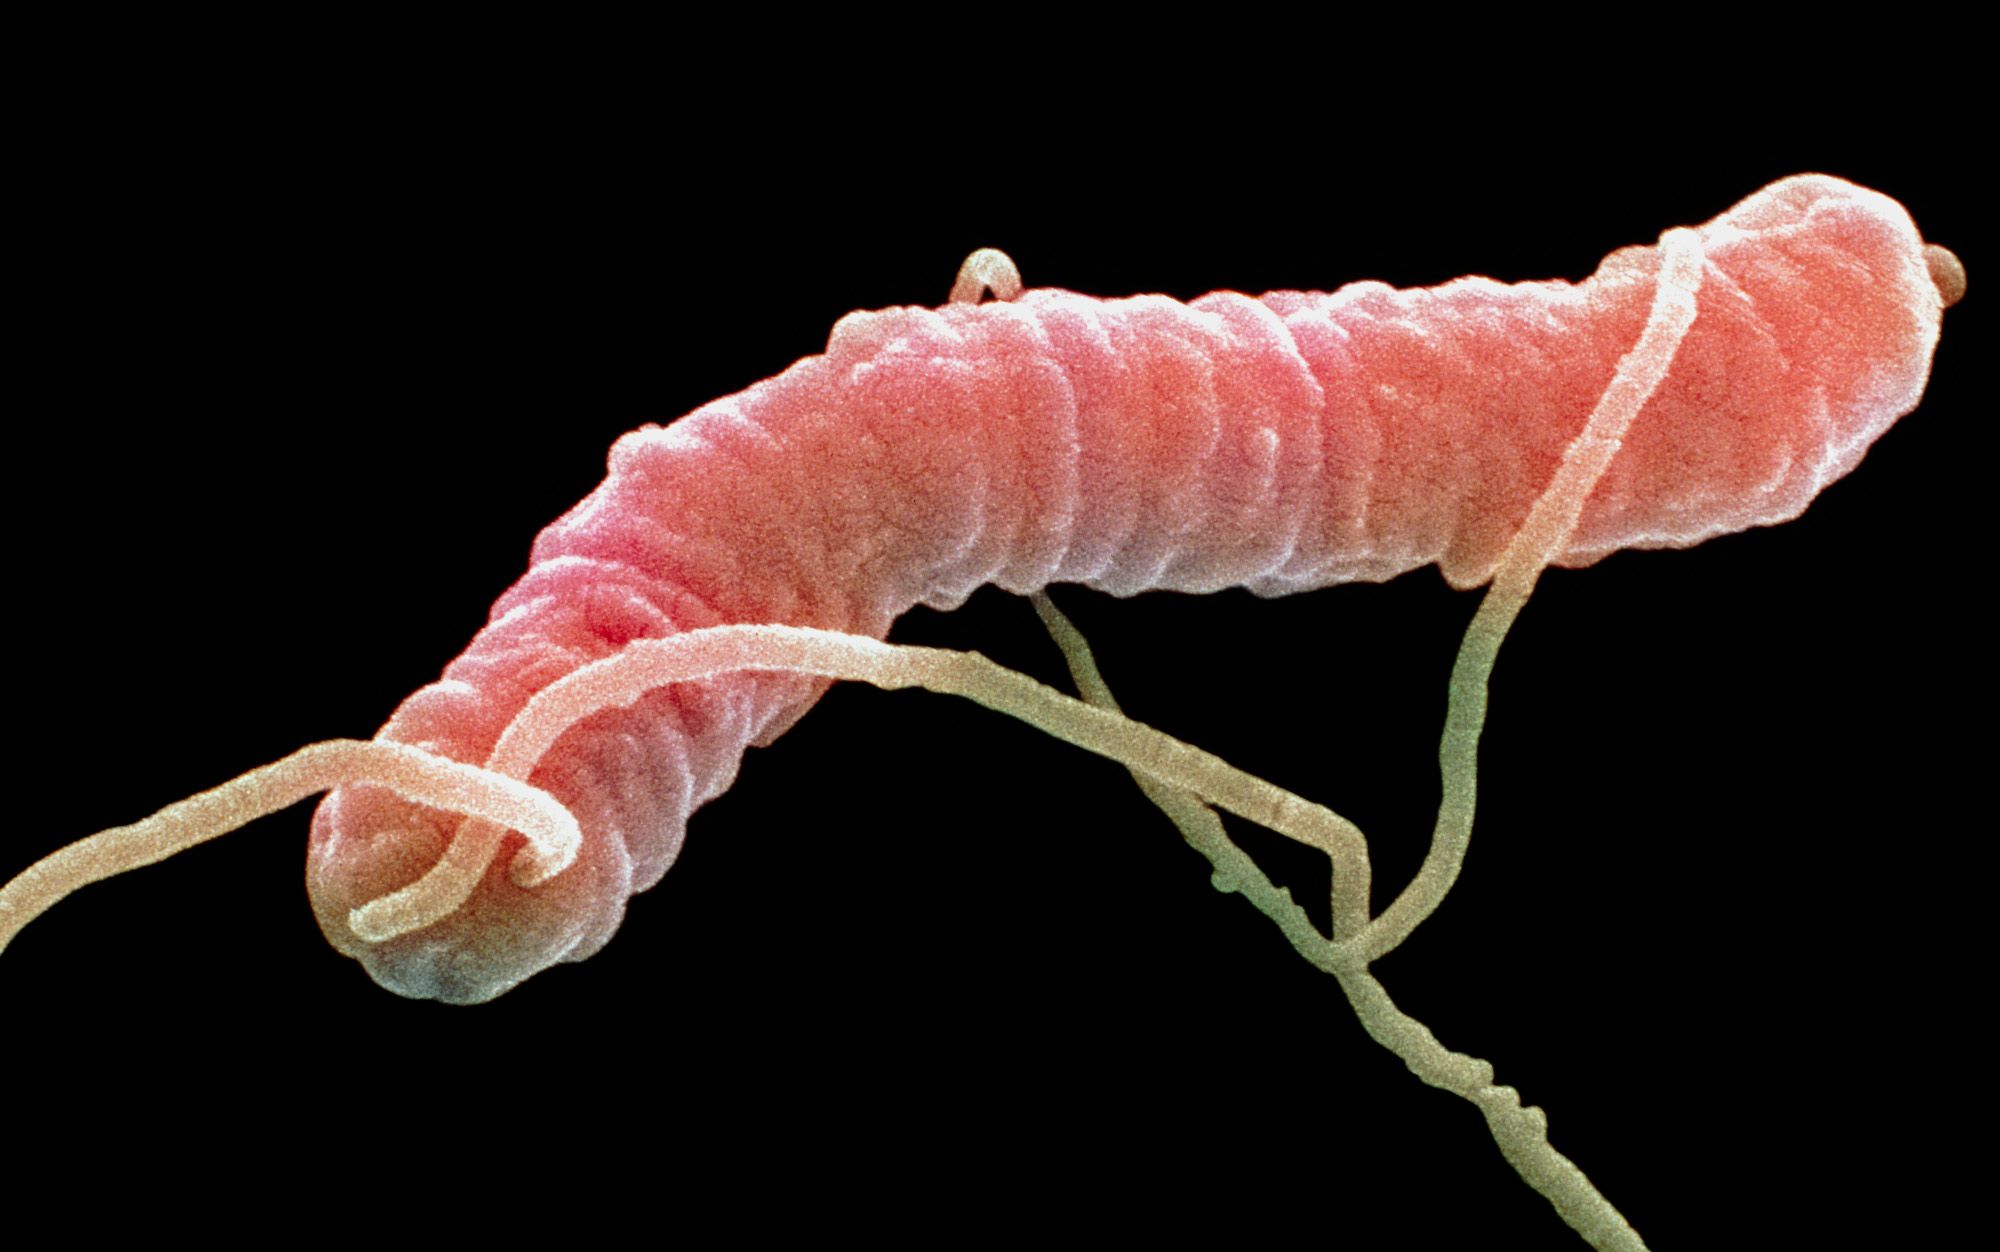 Microbes have no morals | Aeon